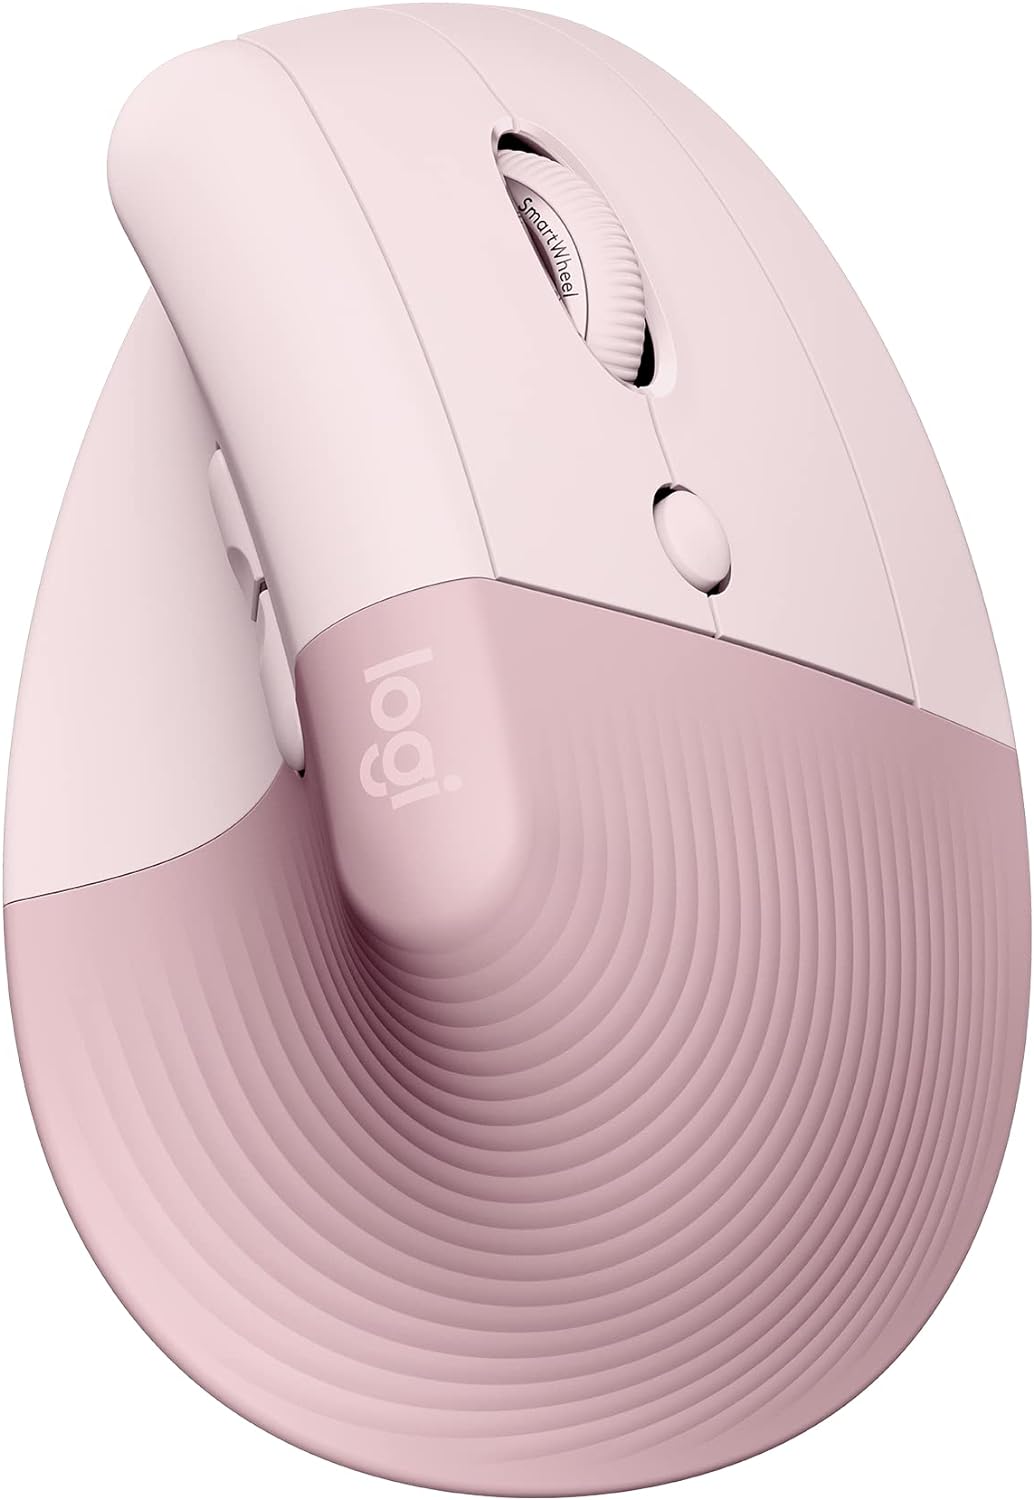 Logitech Lift Vertical Wireless Mouse, Pink - 910-006478